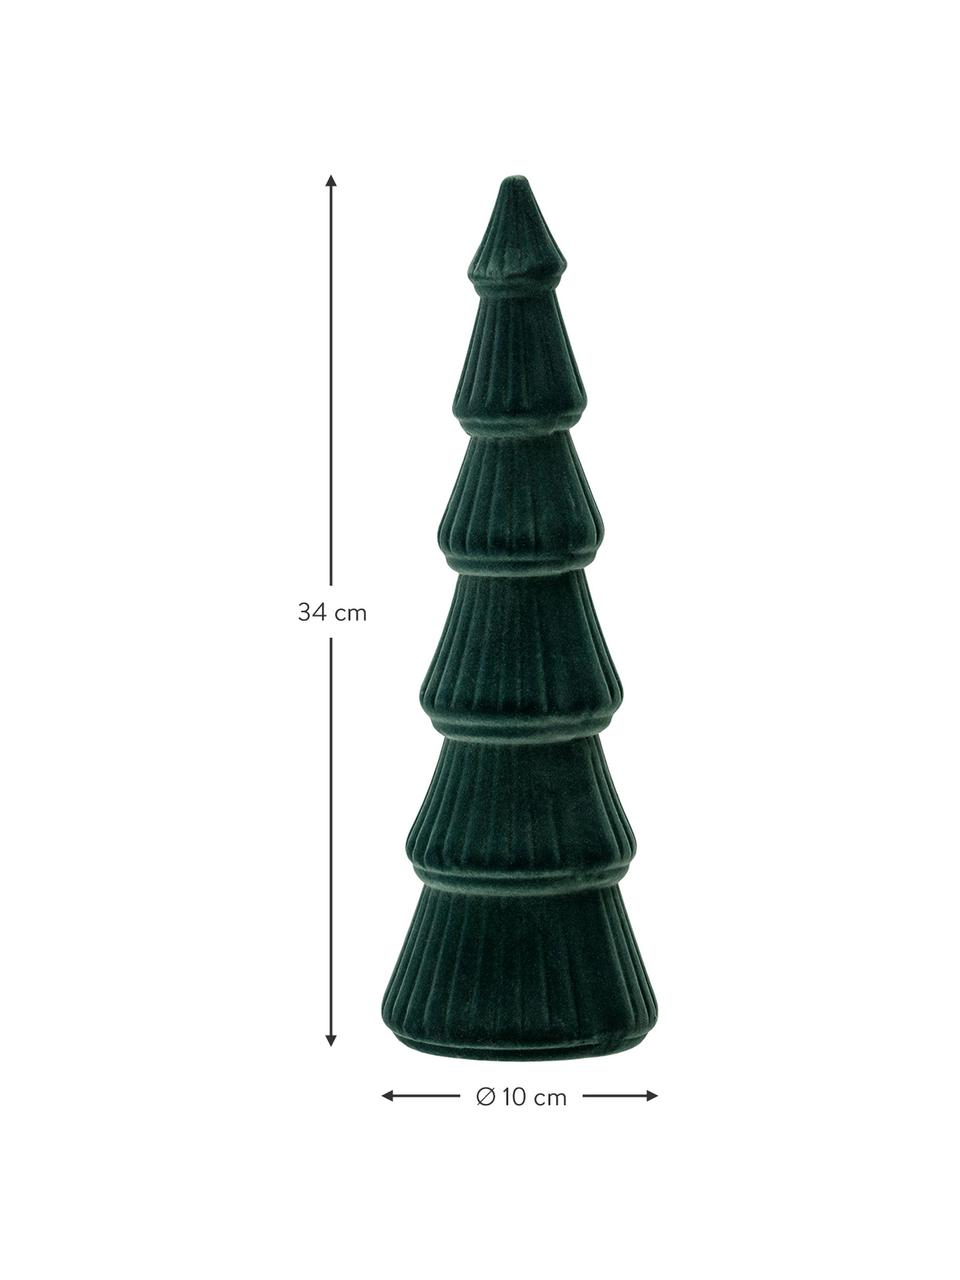 Samt-Deko-Baum Tree H 34 cm, Mitteldichte Holzfaserplatte, Polyestersamt, Grün, Ø 10 x H 34 cm